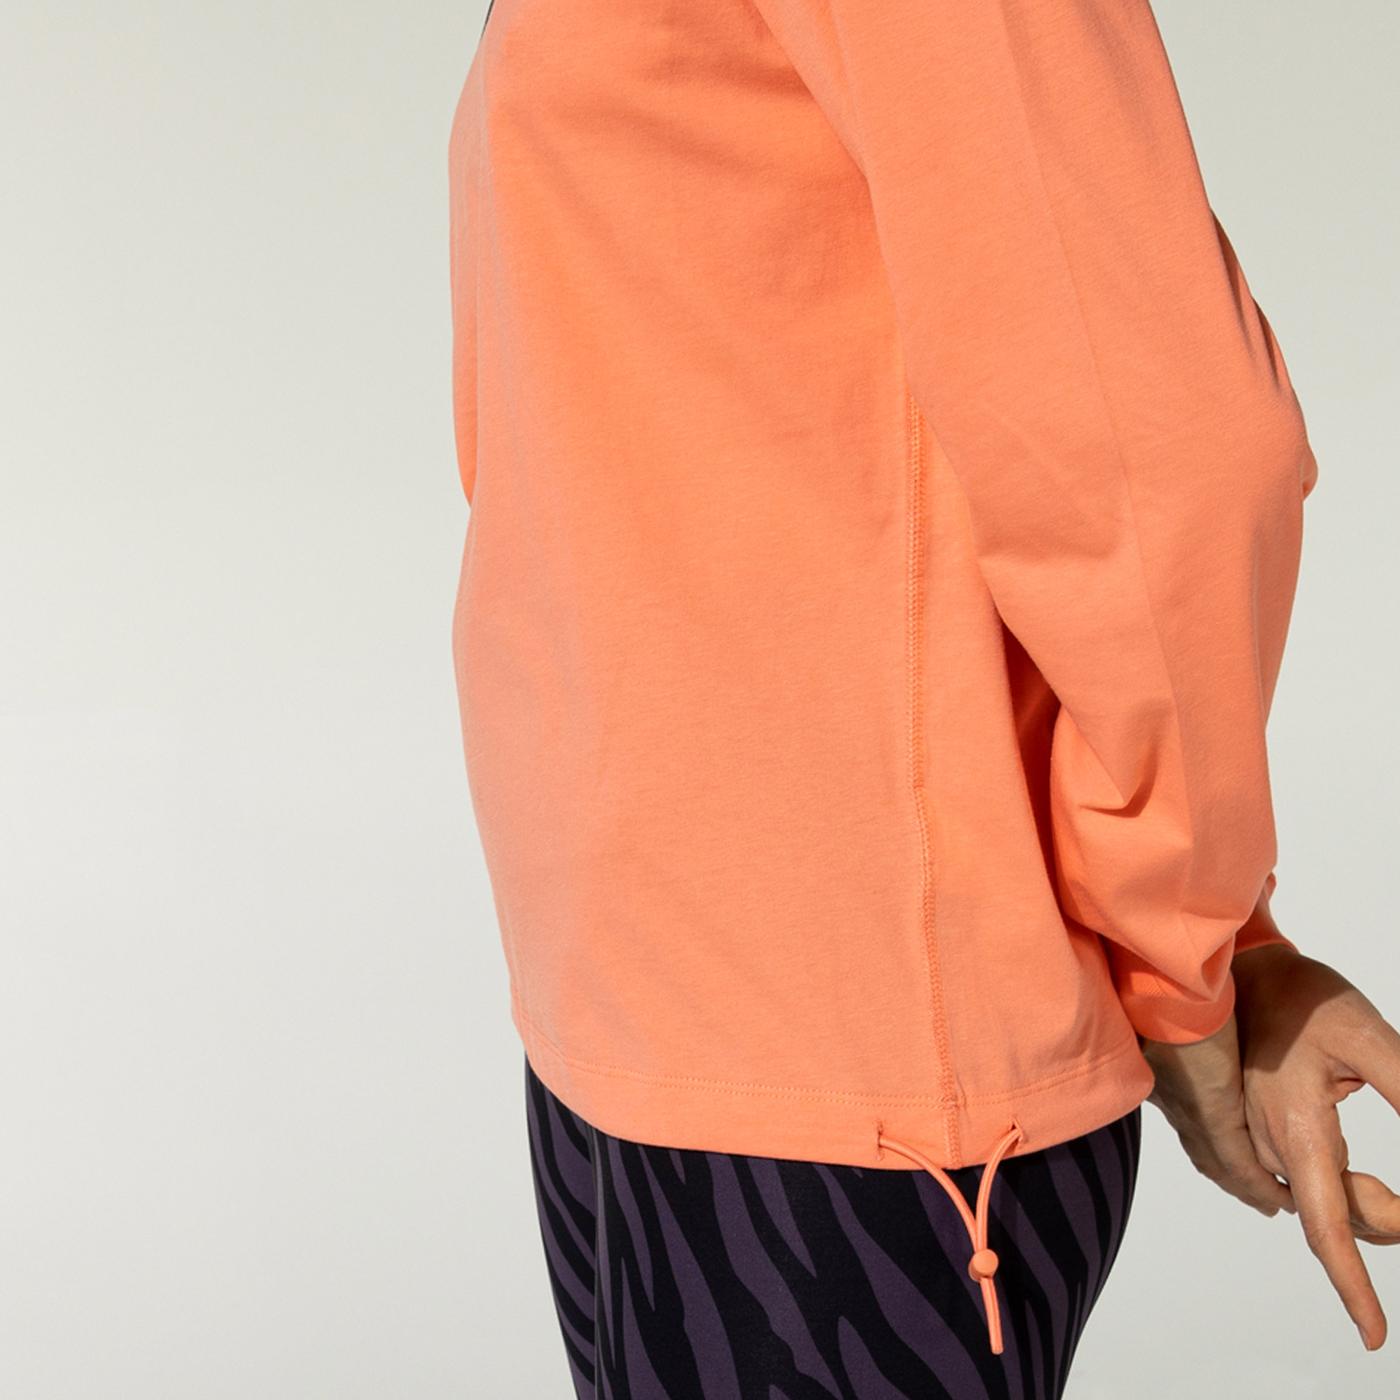 Nike Sportswear Kadın Turuncu Sweatshirt